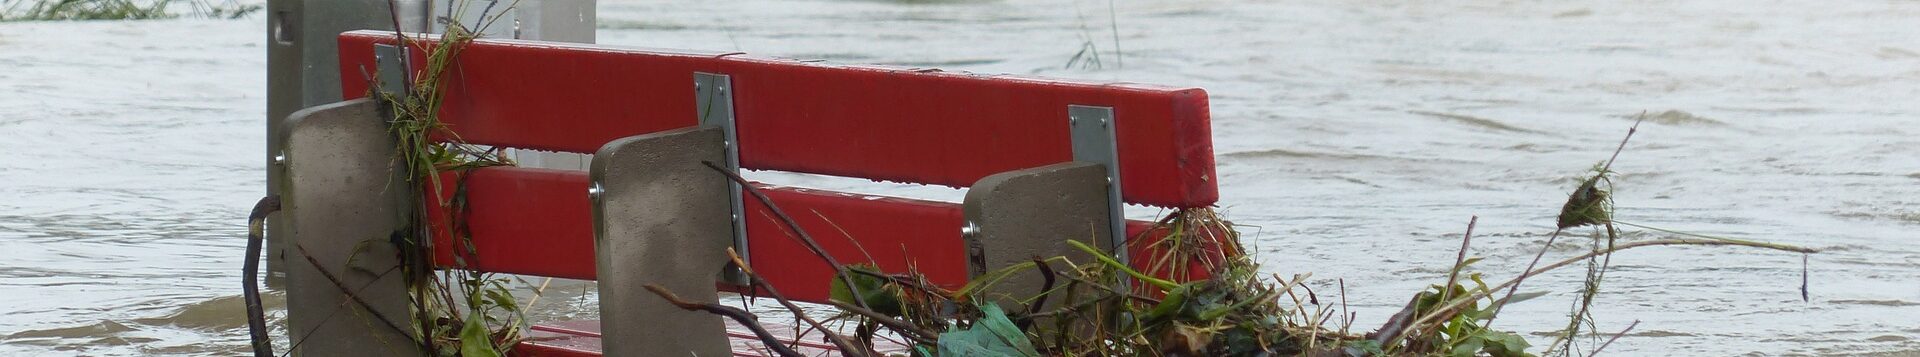 Eine rote Sitzbank ist bis zur Hälfte überschwemmt, Äste und Müll wurden an die Bank gespült und hängen dort fest. Ein Baum liegt im Wasser